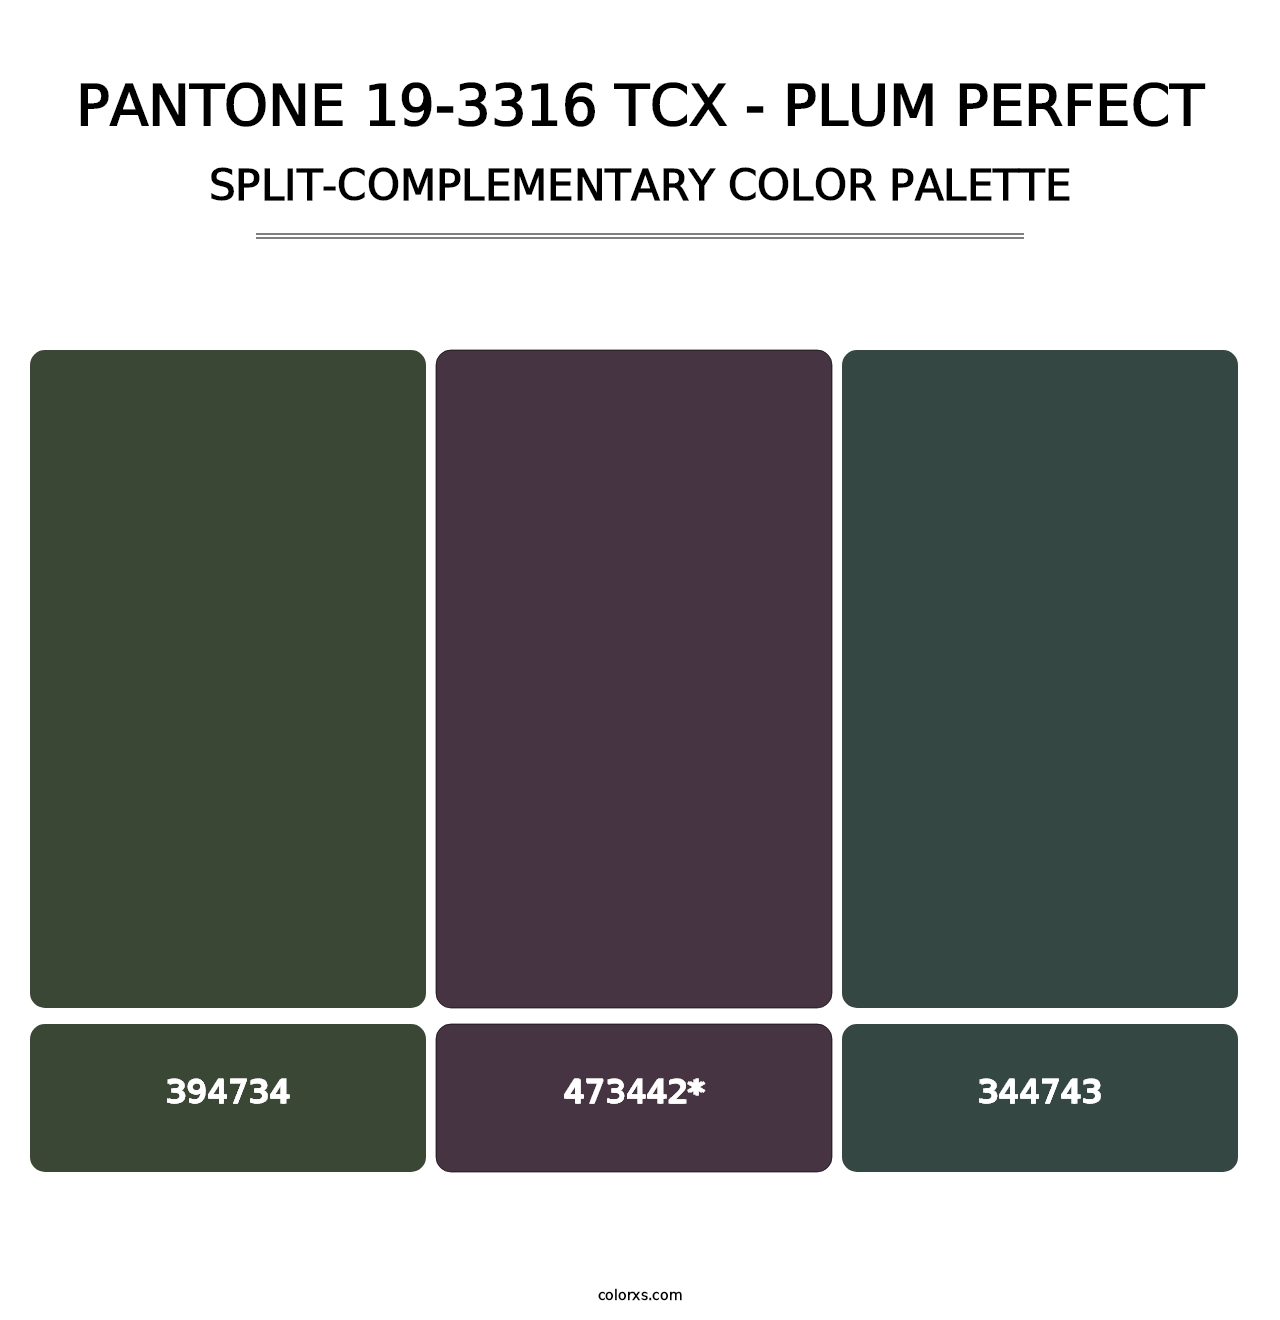 PANTONE 19-3316 TCX - Plum Perfect - Split-Complementary Color Palette